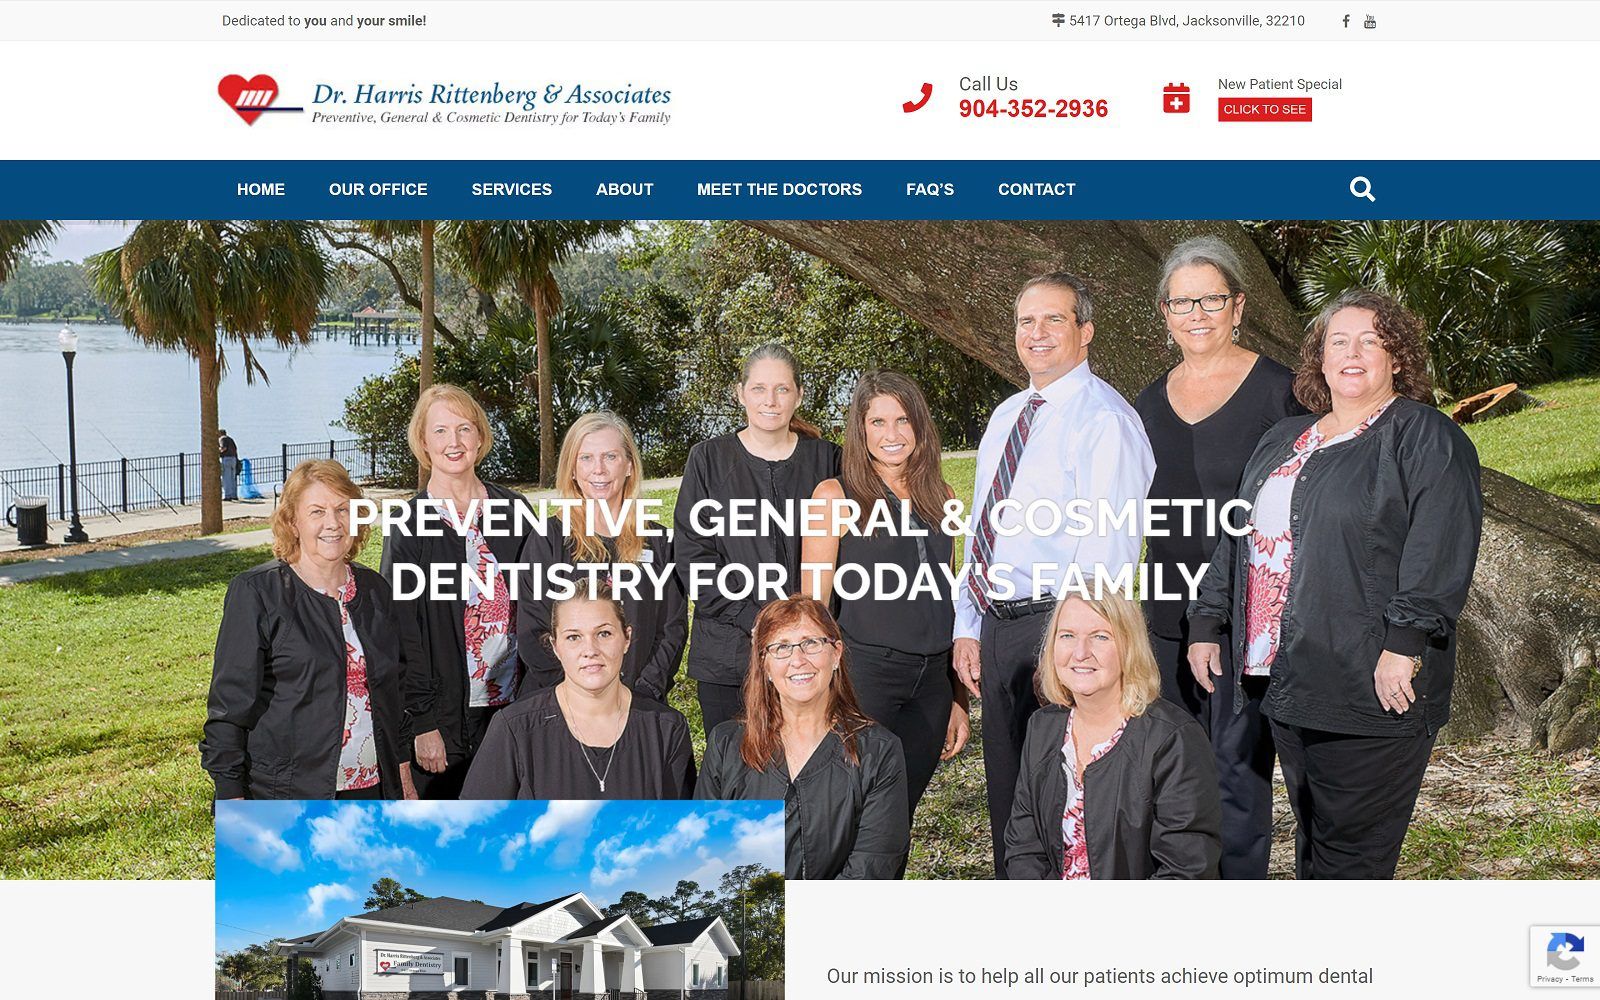 The screenshot of dr. Harris rittenberg & associates website